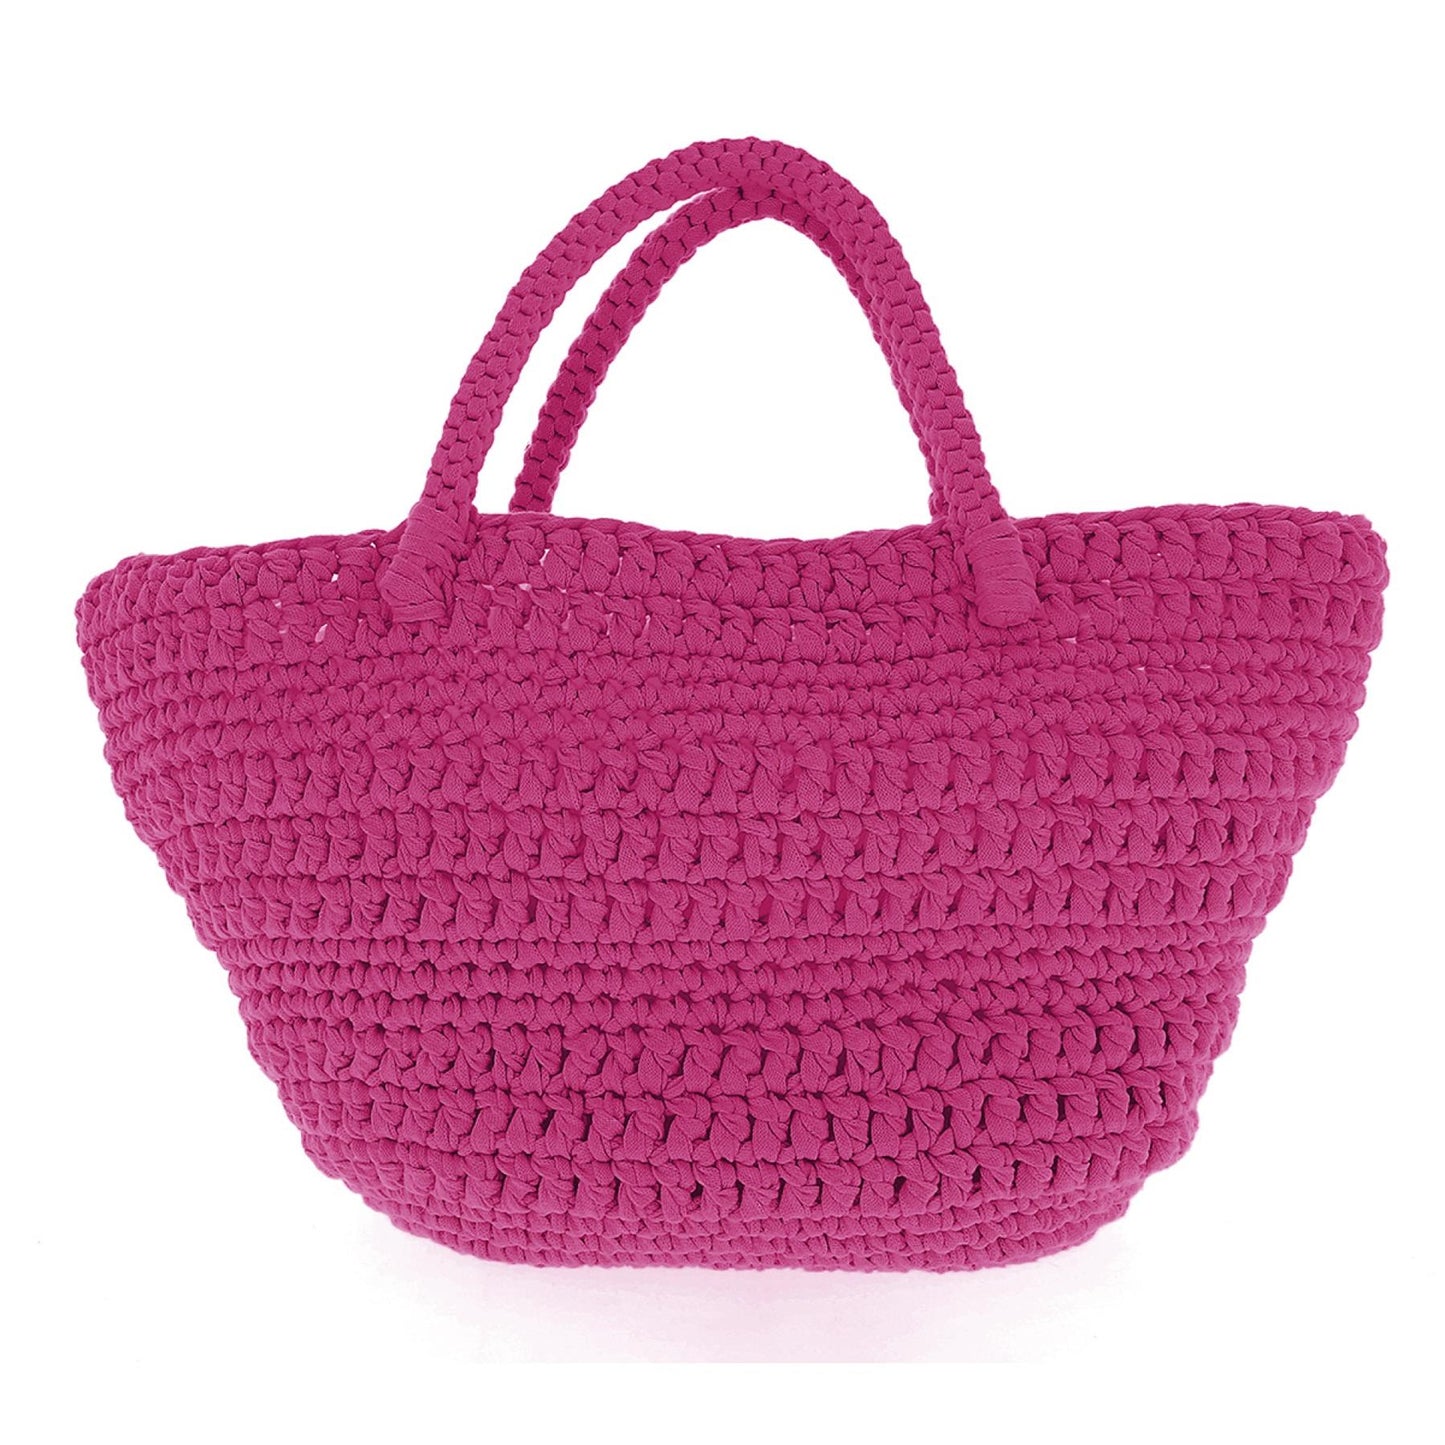 [Hoooked] PAK168SP4 RibbonXL Crazy Plum Cotton Avila Beachbag Crochet Kit